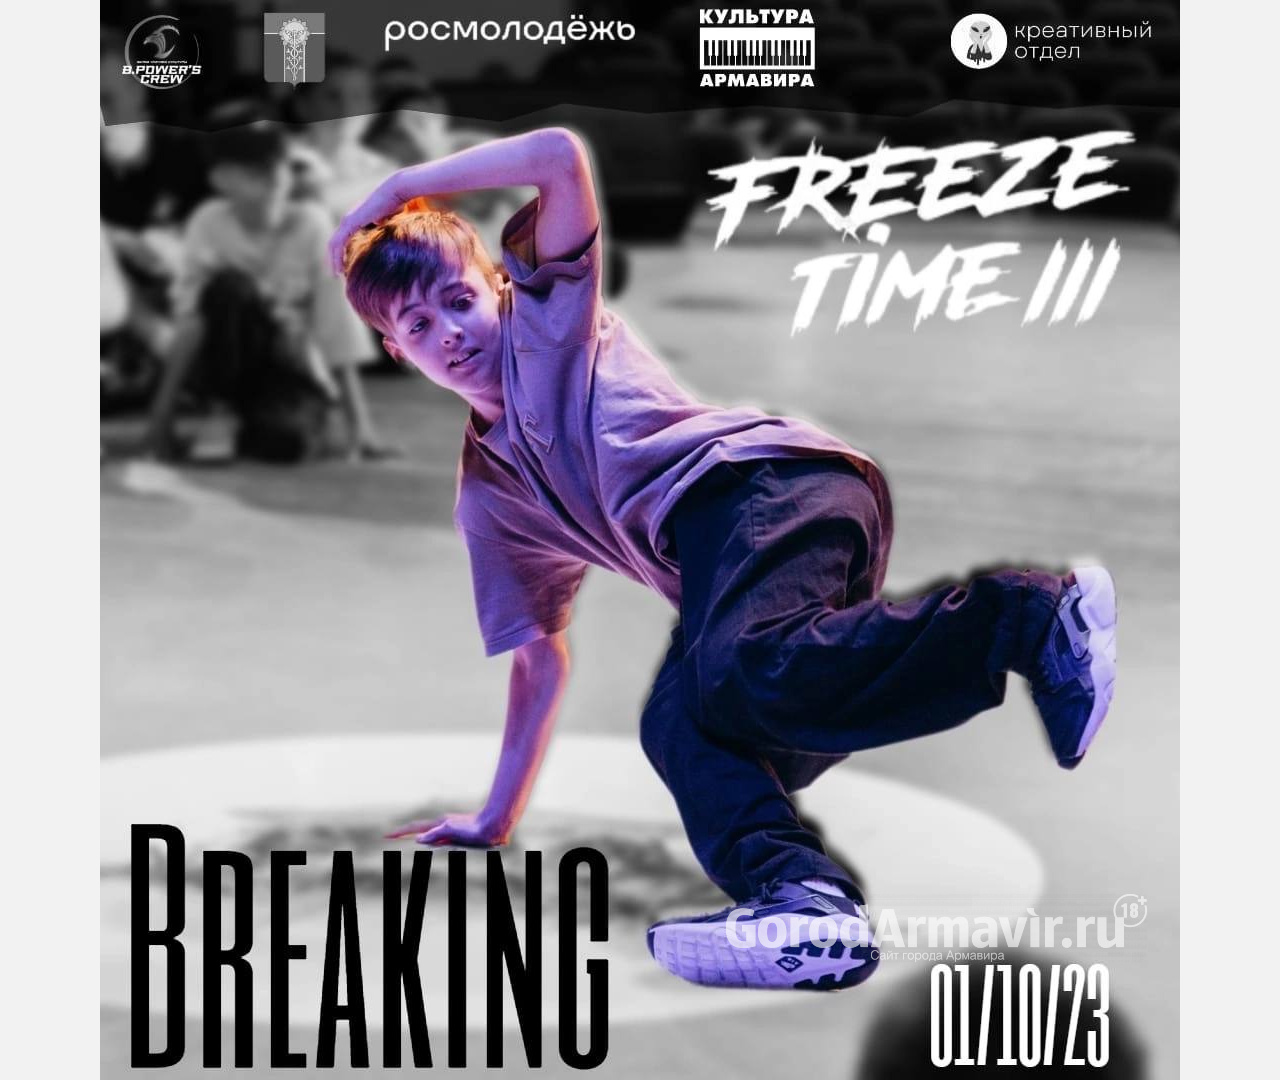 В Армавире 1 октября пройдут межрегиональные соревнования по брейк-дансу Freeze time lll